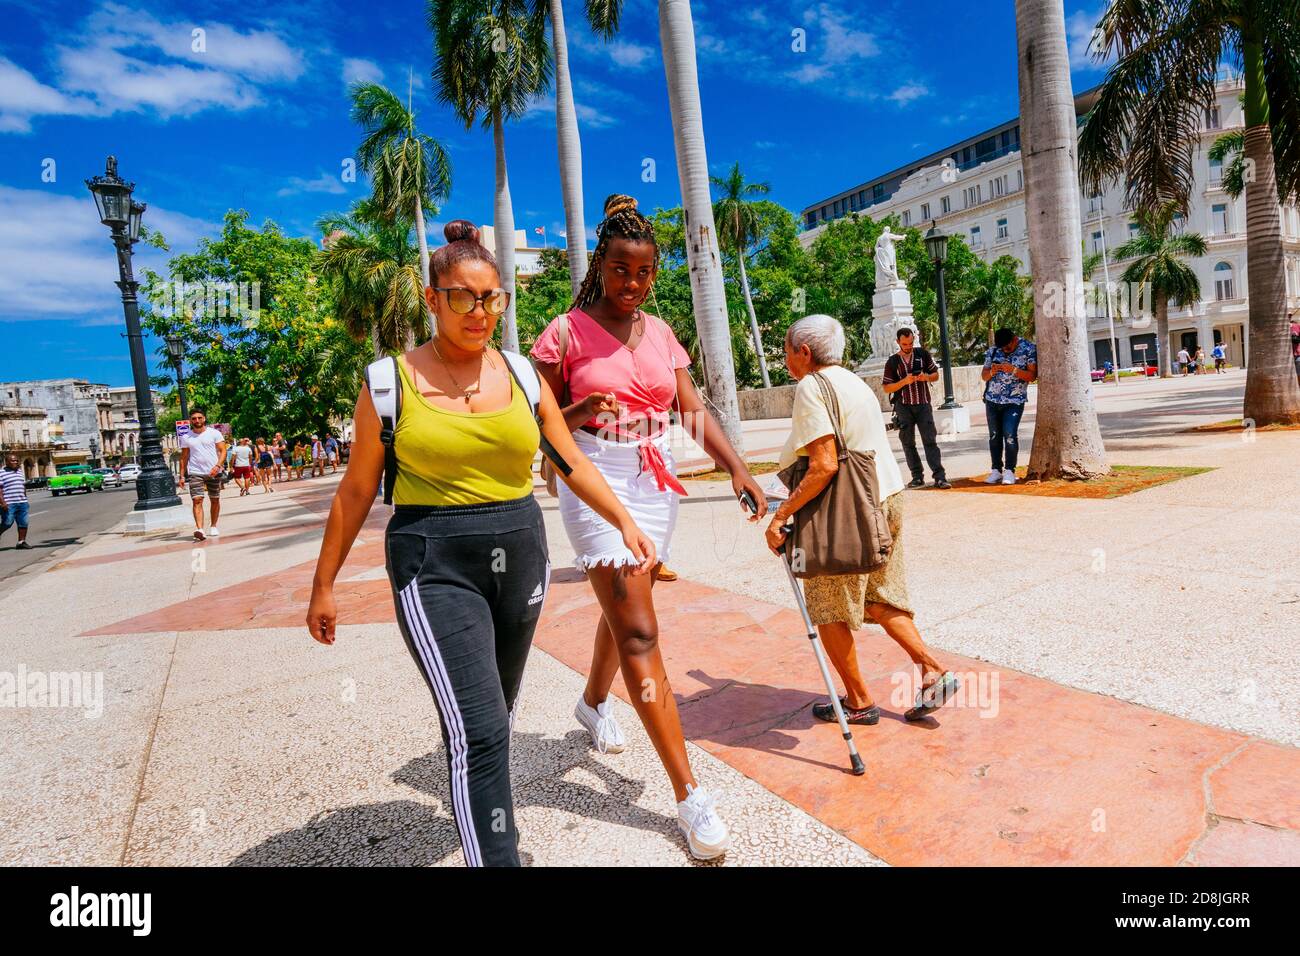 Zwei junge kubanische Mulatto-Frauen und eine ältere Frau gingen durch den Central Park - Parque Central. Havanna. Kuba, Lateinamerika und die Karibik Stockfoto